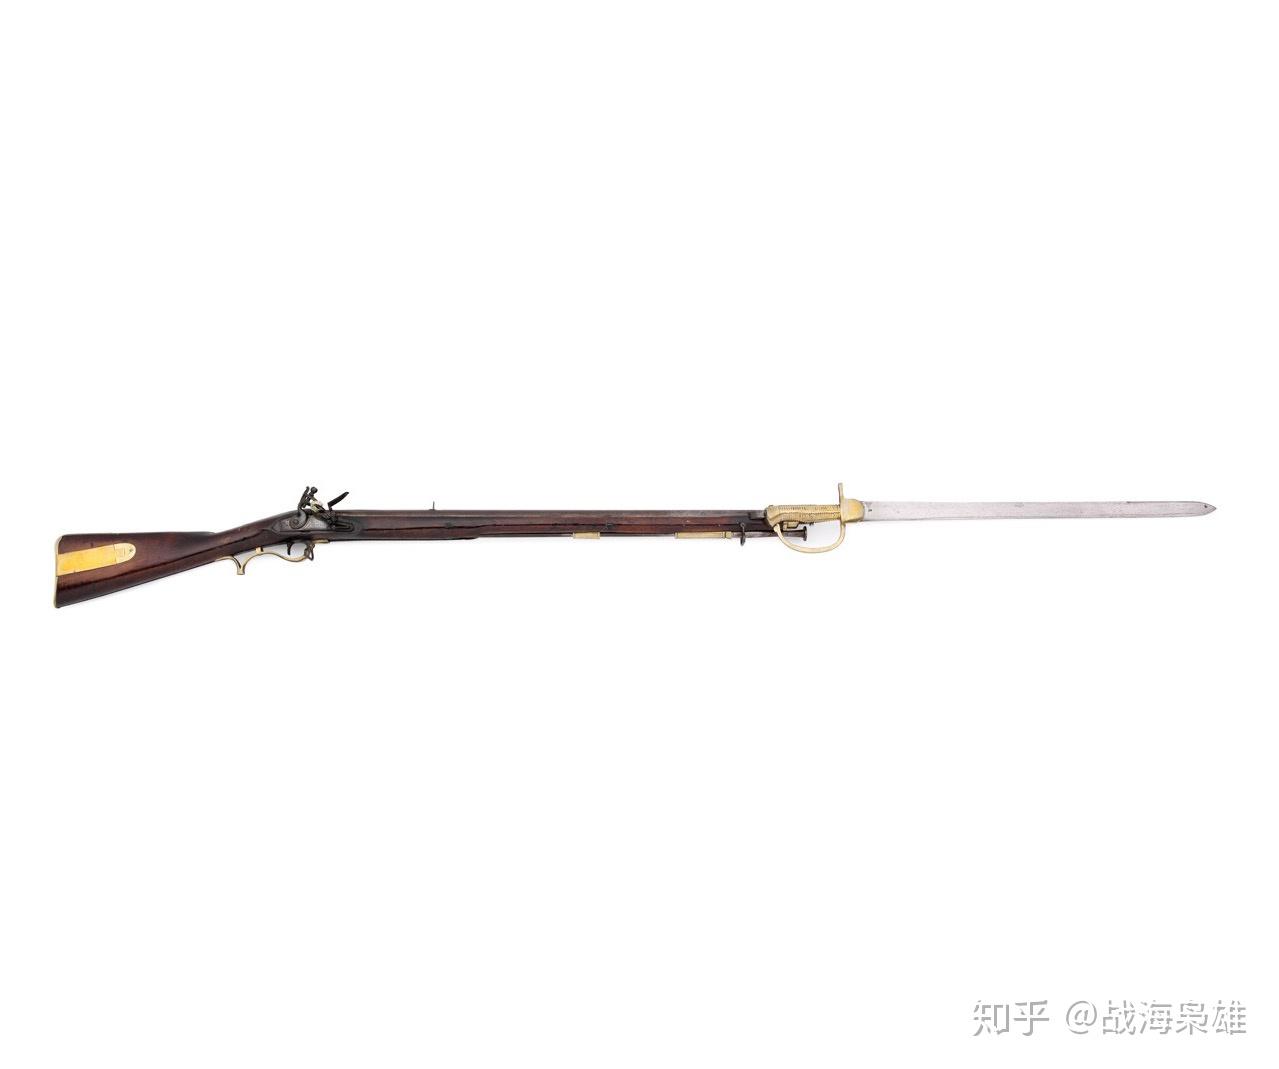 18世纪线列阵时期的燧发枪的刺刀可以做成这样吗?